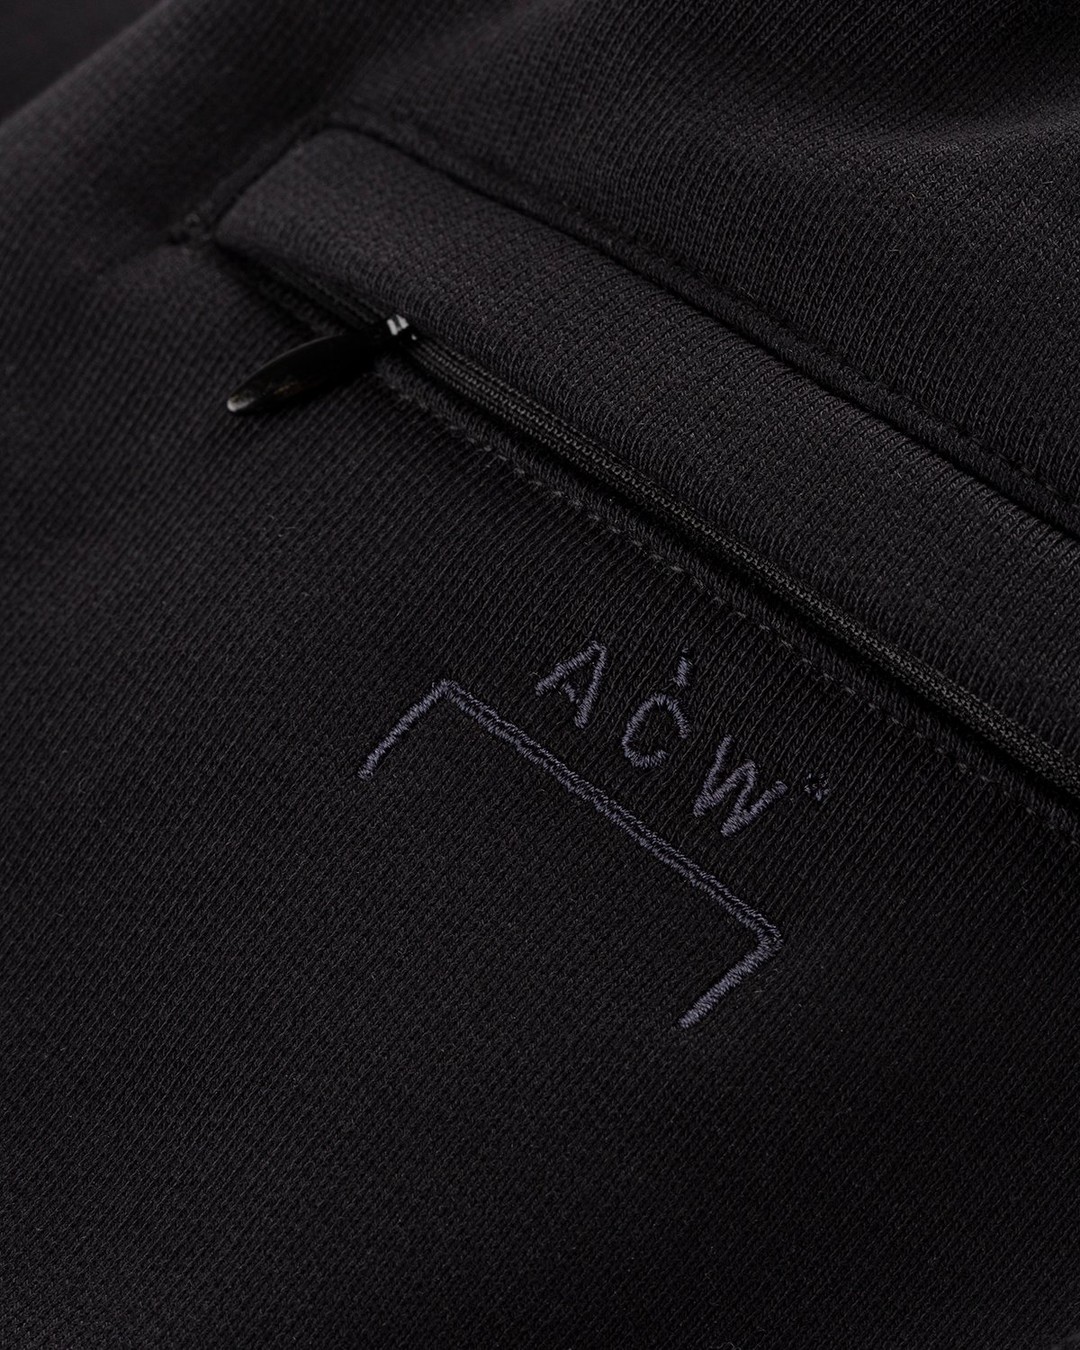 A-Cold-Wall* – Vault Shorts Black - Shorts - Black - Image 6